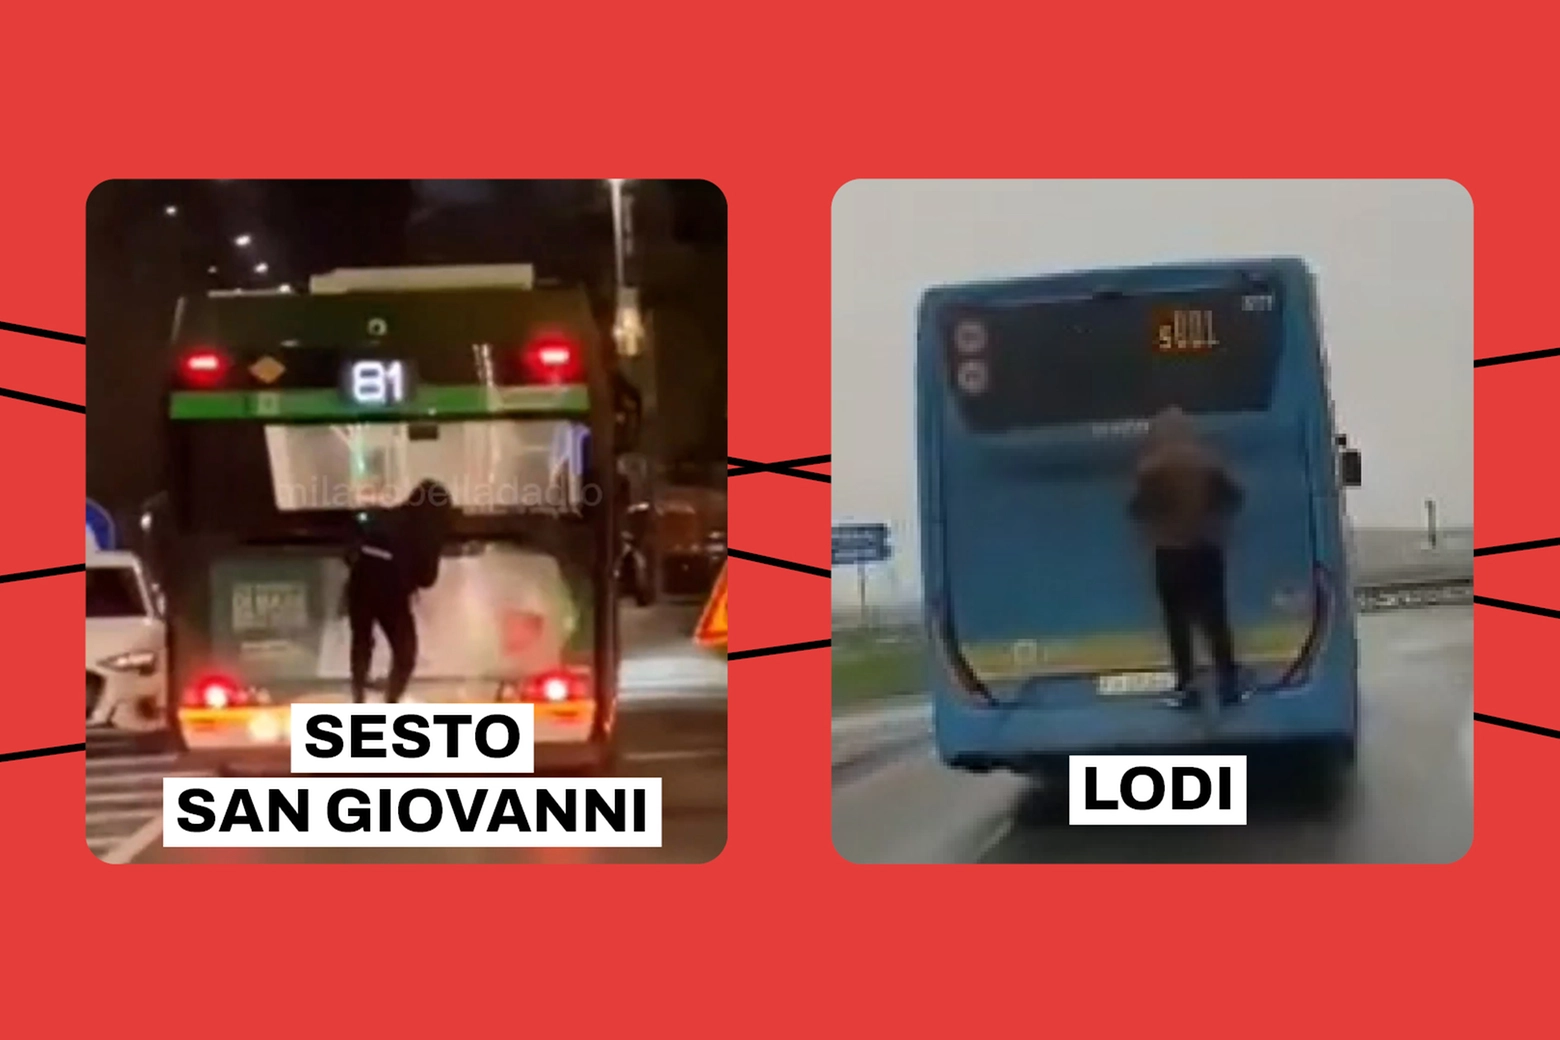 Casi di bus surfing a Sesto San Giovanni e Lodi